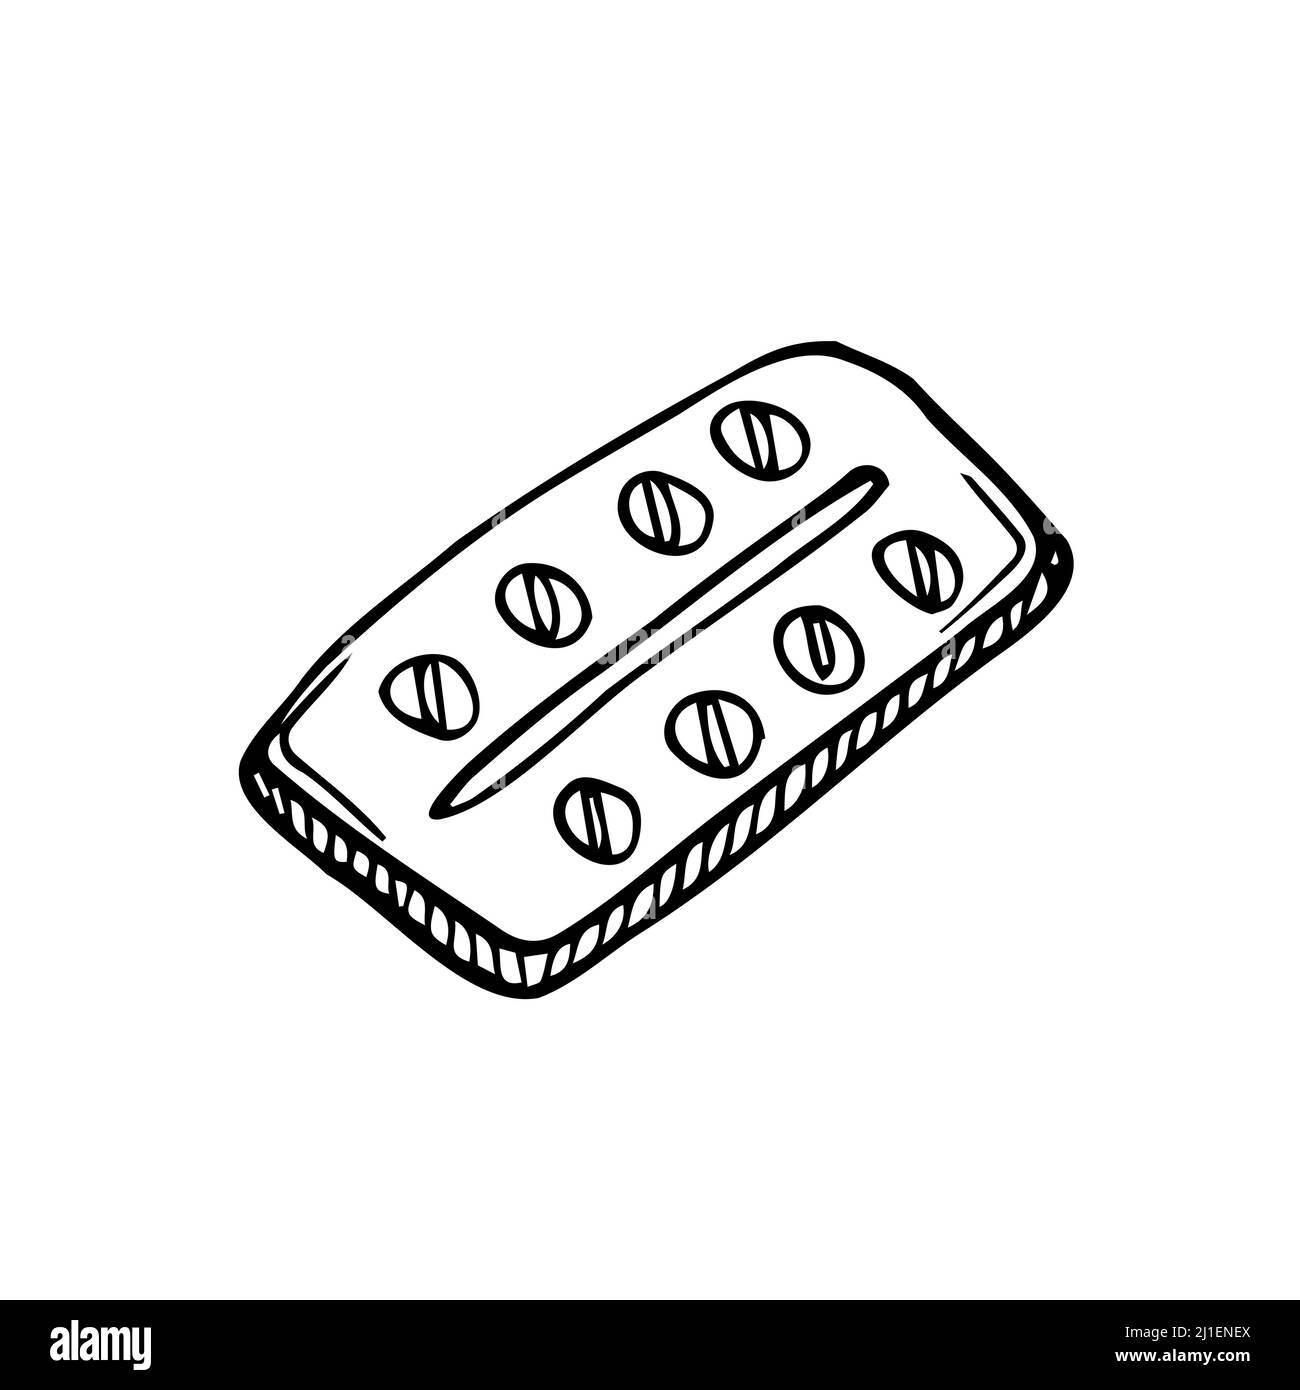 Prescrizione di farmaci e doodle medicina, disegno a mano vettore doodle illustrazione di varie compresse medicina e pillole di droga per scopi medici Illustrazione Vettoriale